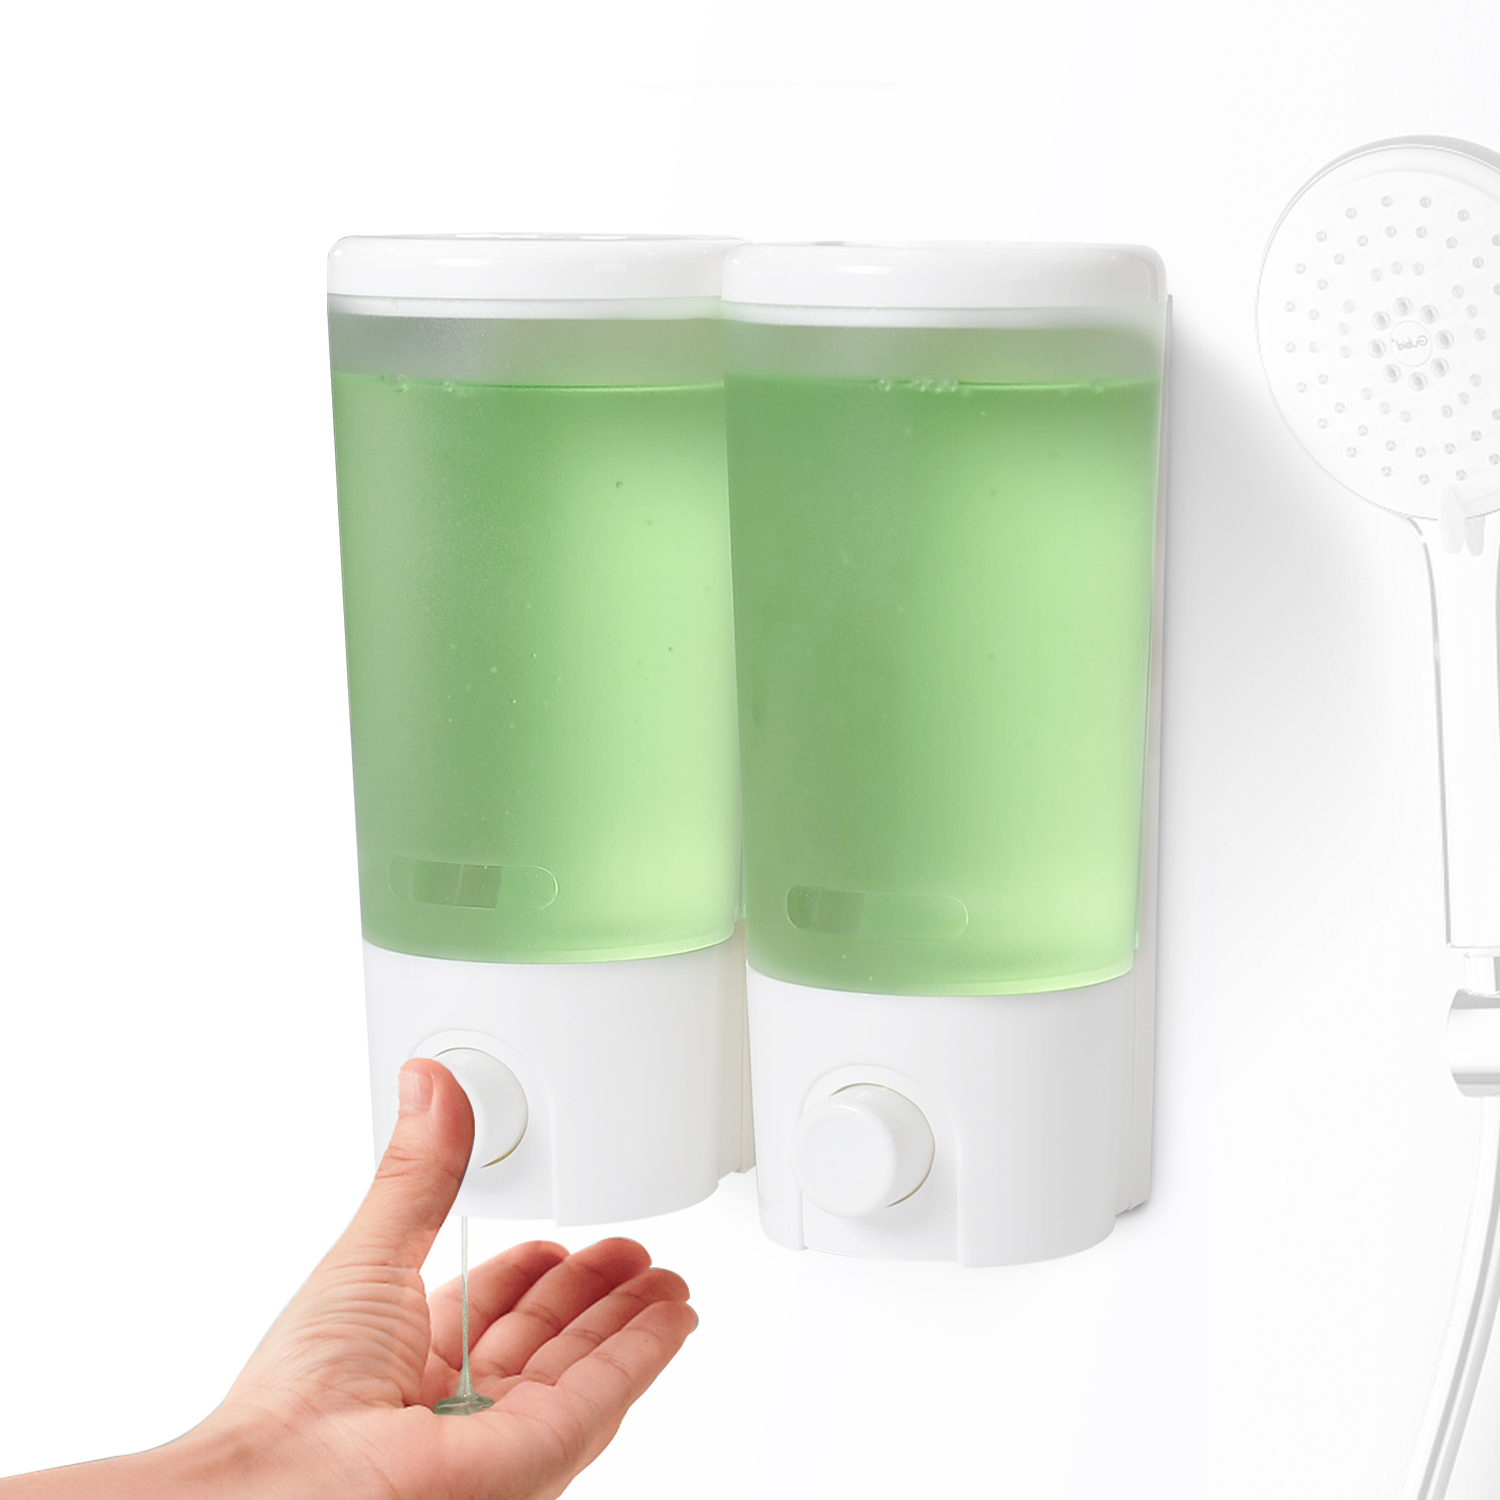 Double Liquid Soap Dispenser for Shower V-9102 